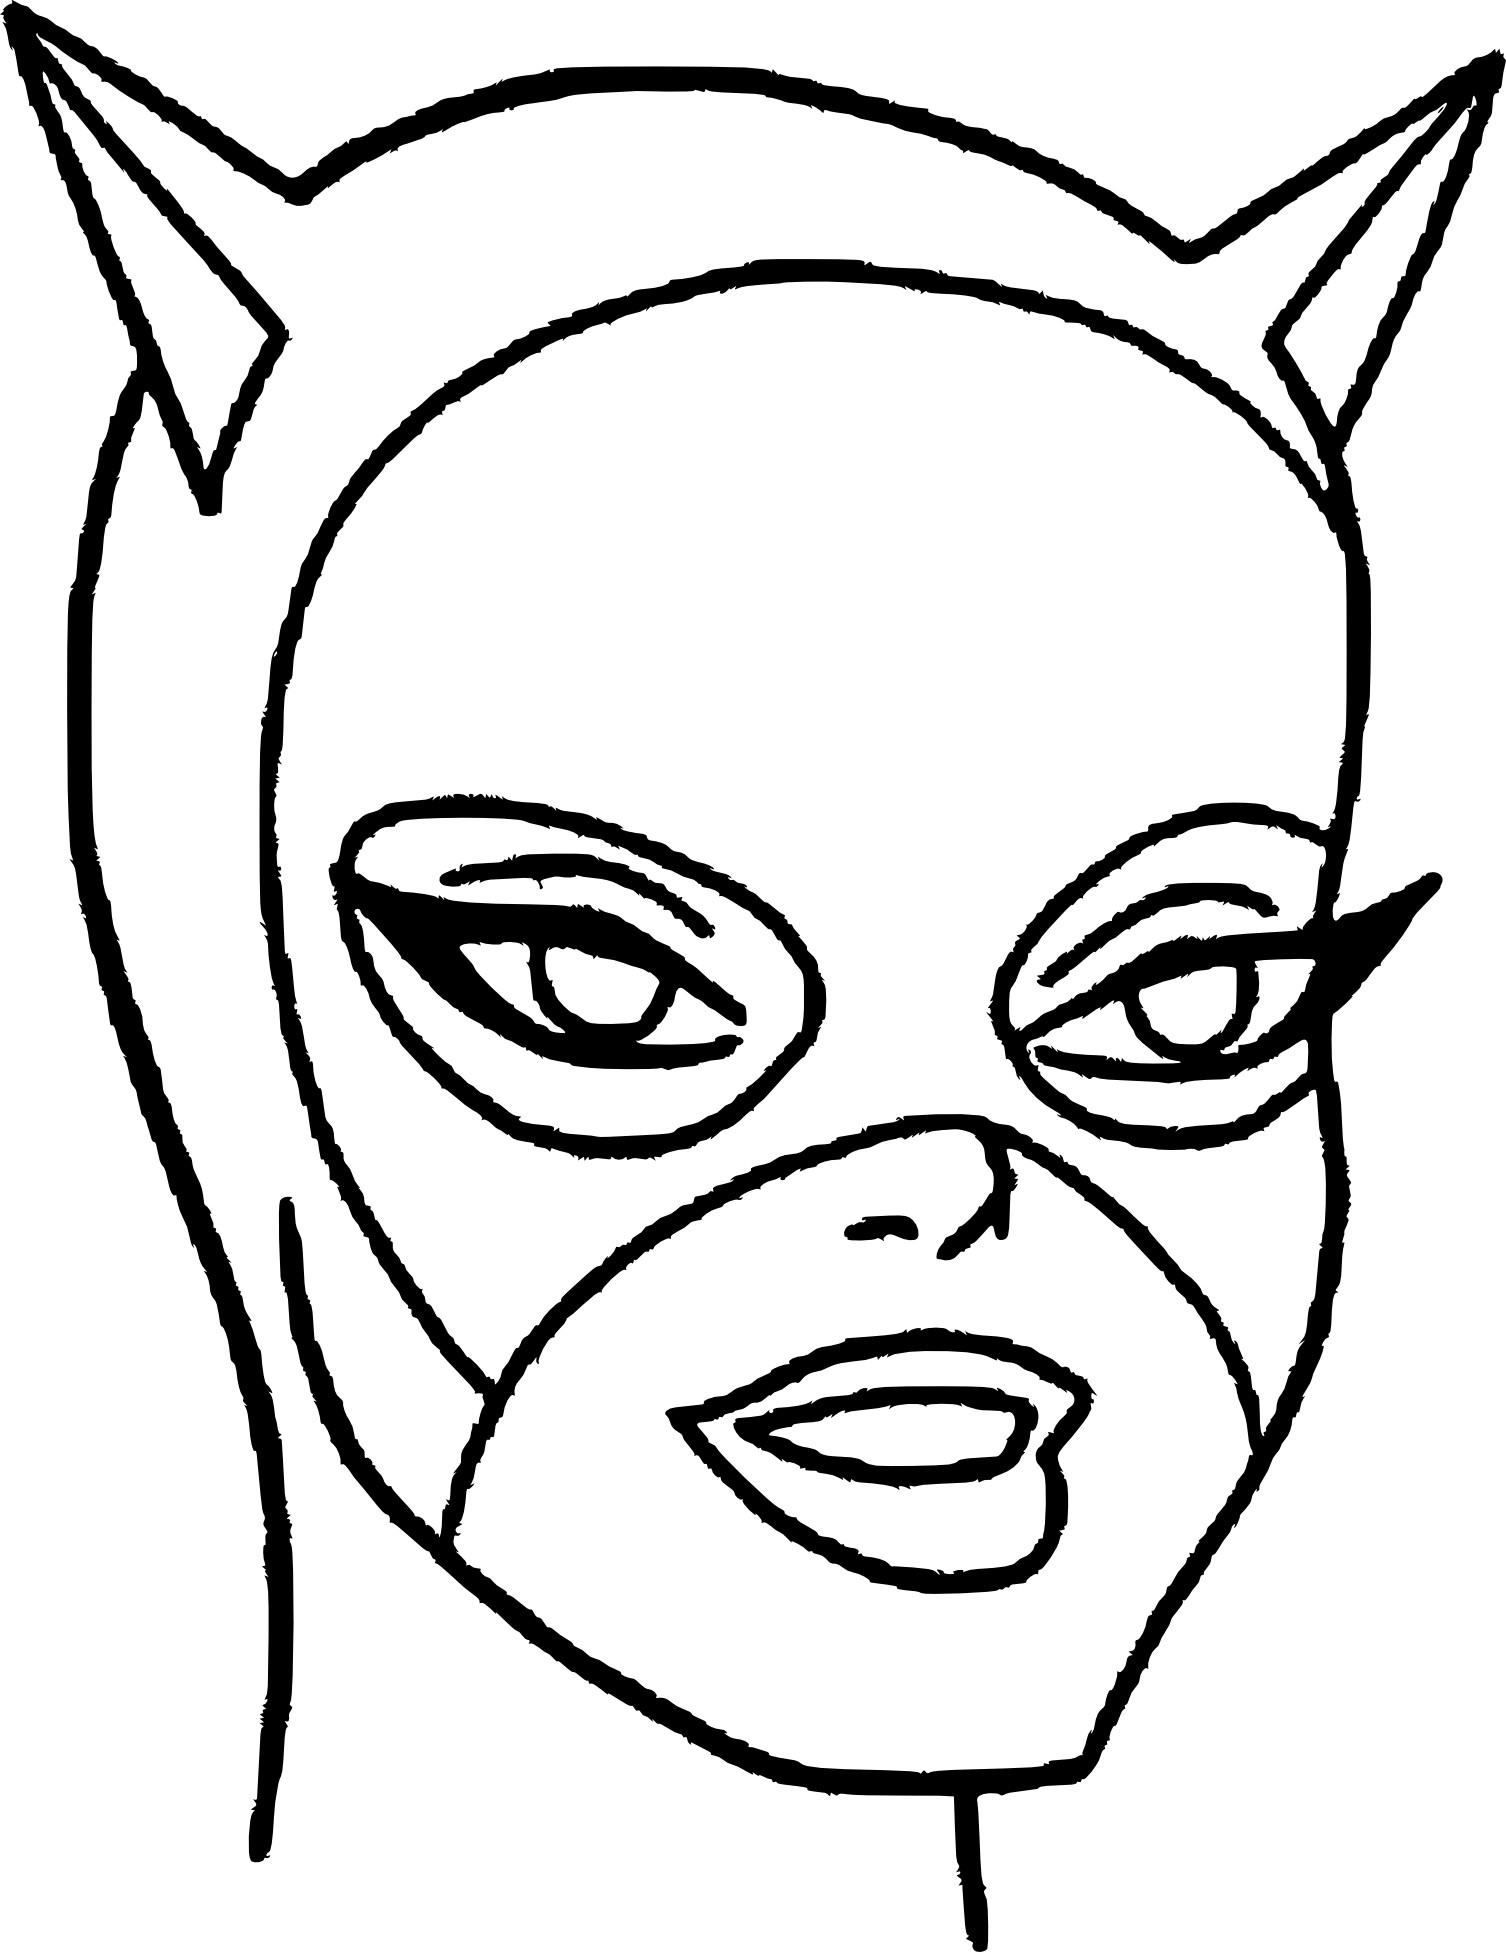 Coloriage Masque Catwoman À Imprimer à Masque De Catwoman A Imprimer